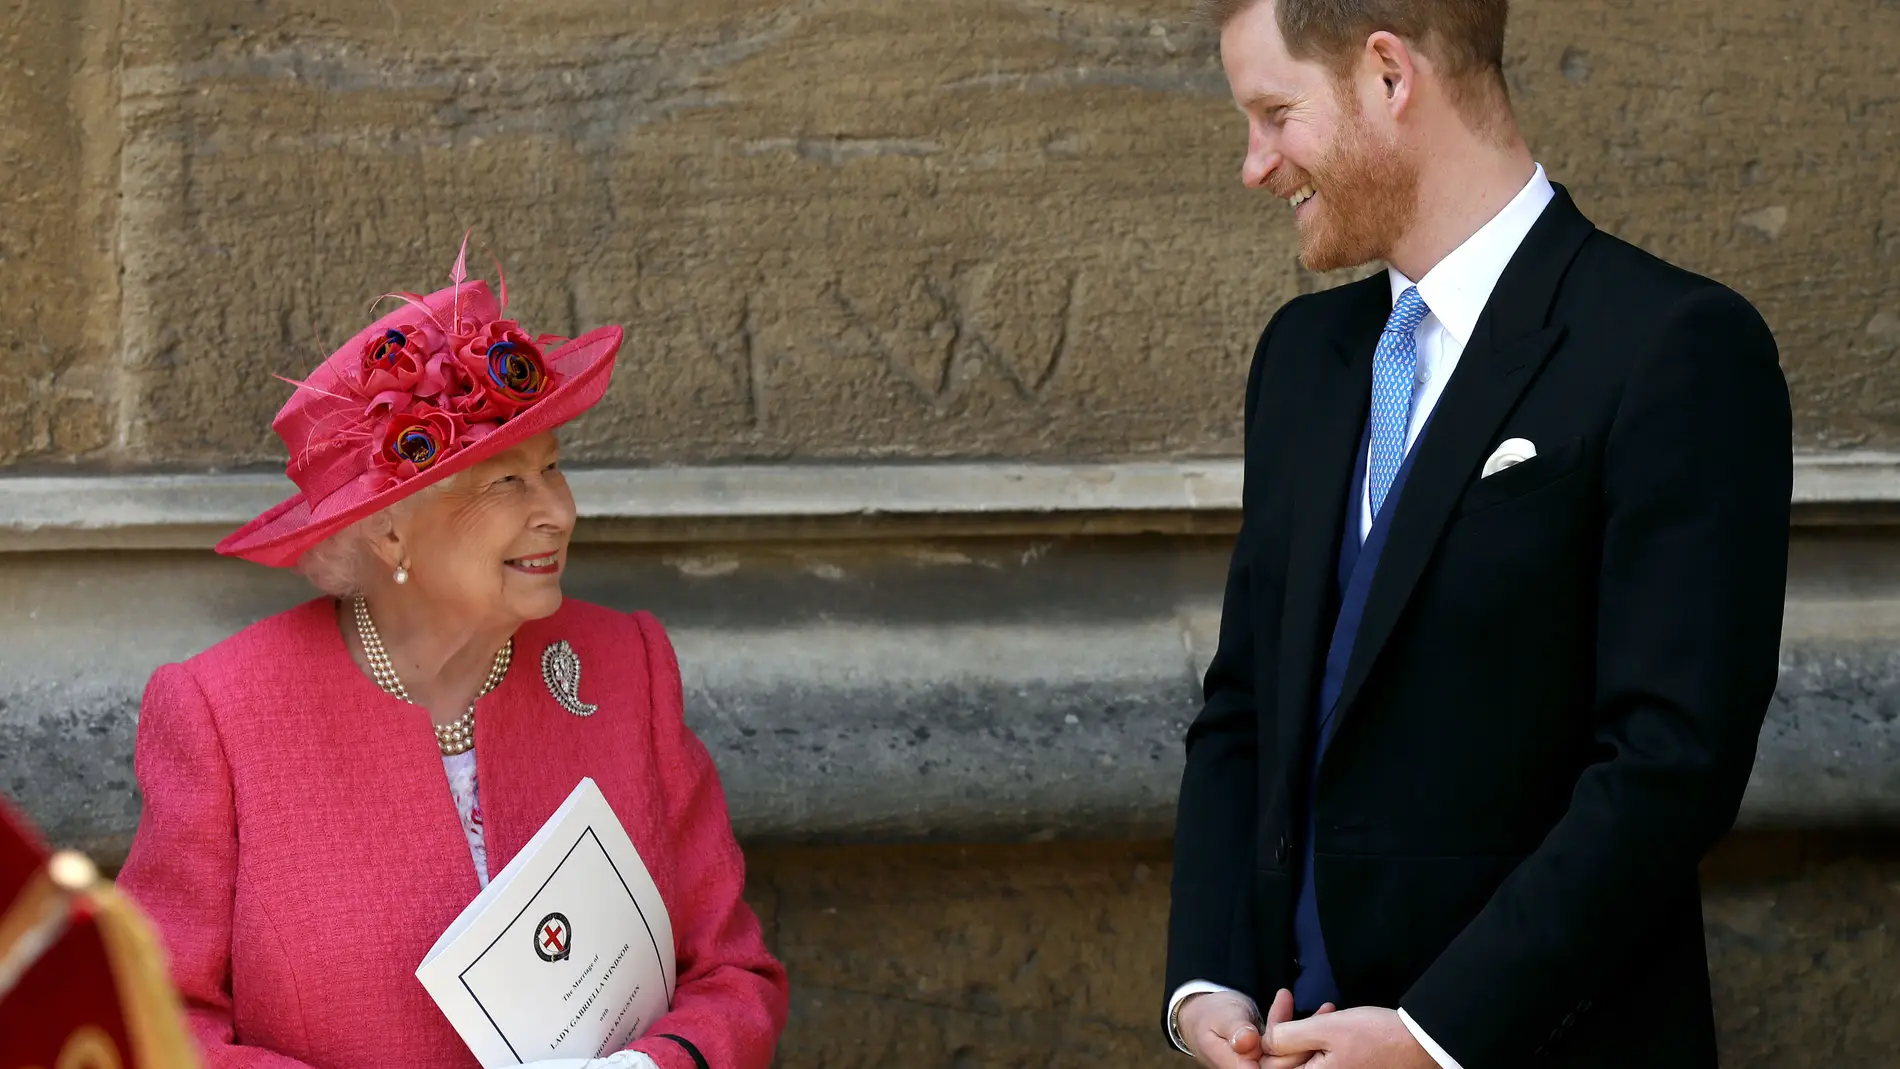 Quién es quién: conoce a los ocho nietos de la reina Isabel II